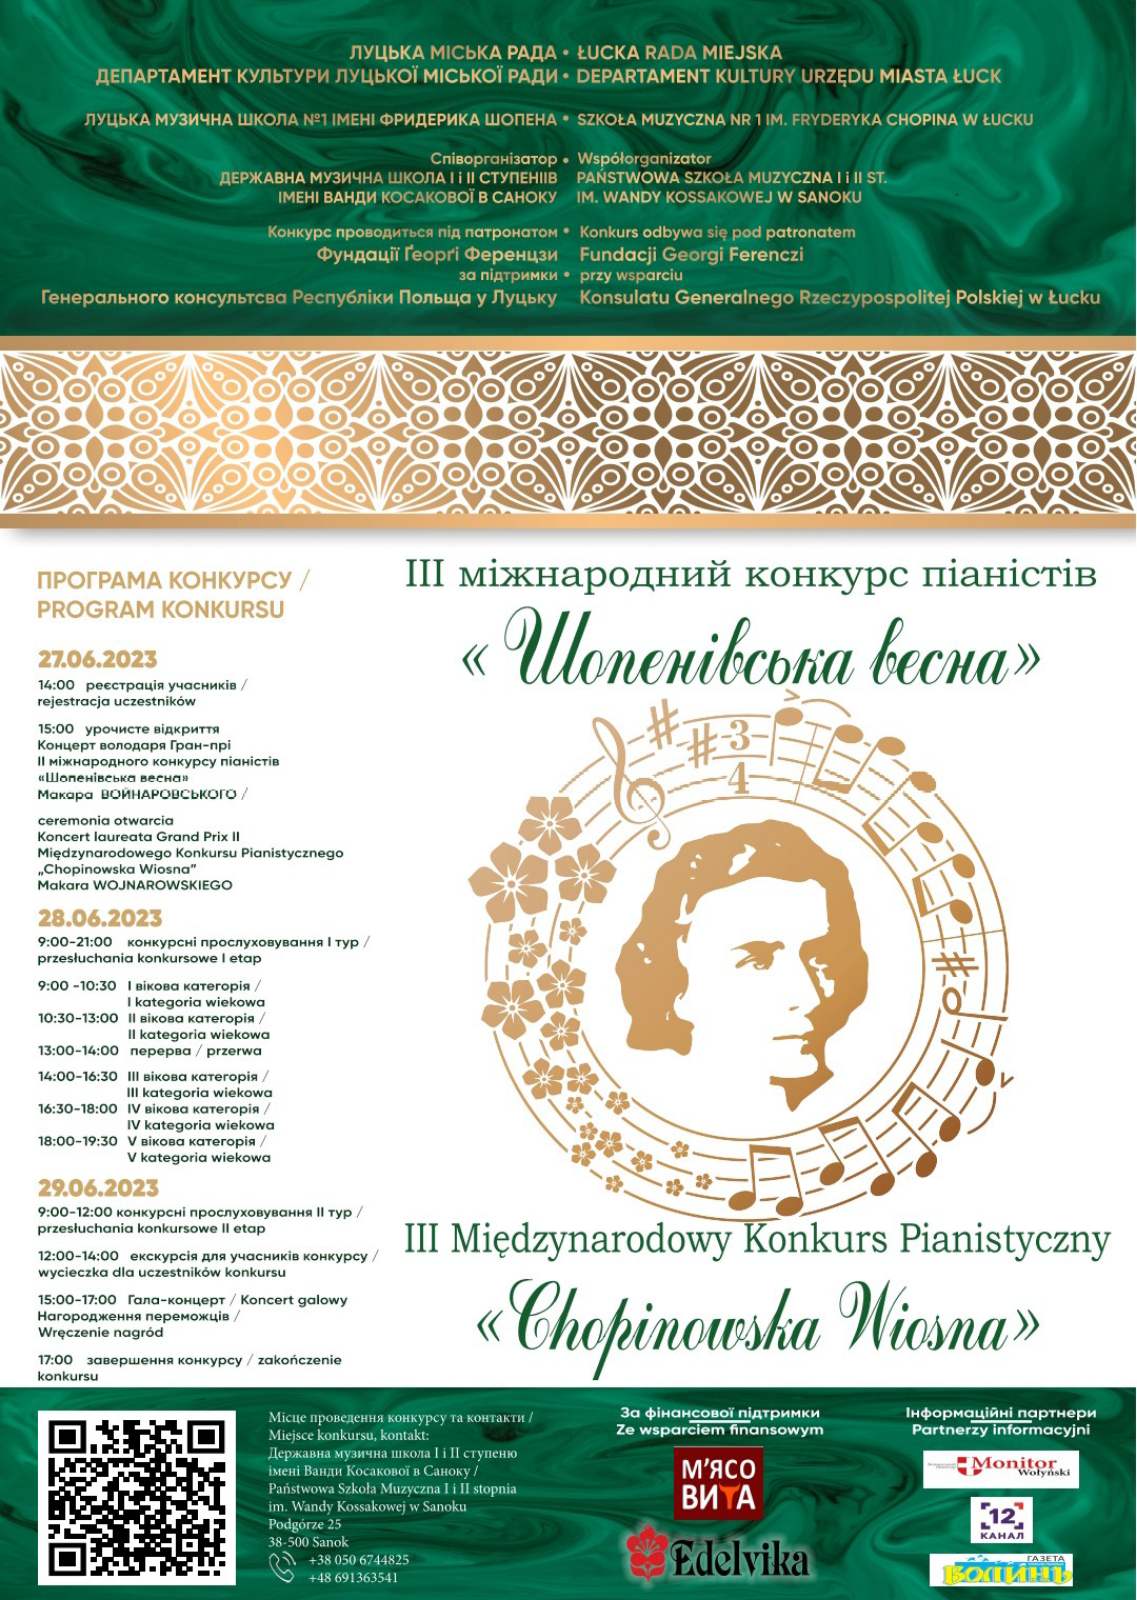 Plakat konkursu Chopinowska Wiosna. Harmonogram konkursu, dane kontaktowe. Brązowe Logo konkursu na biało zielonym tle.